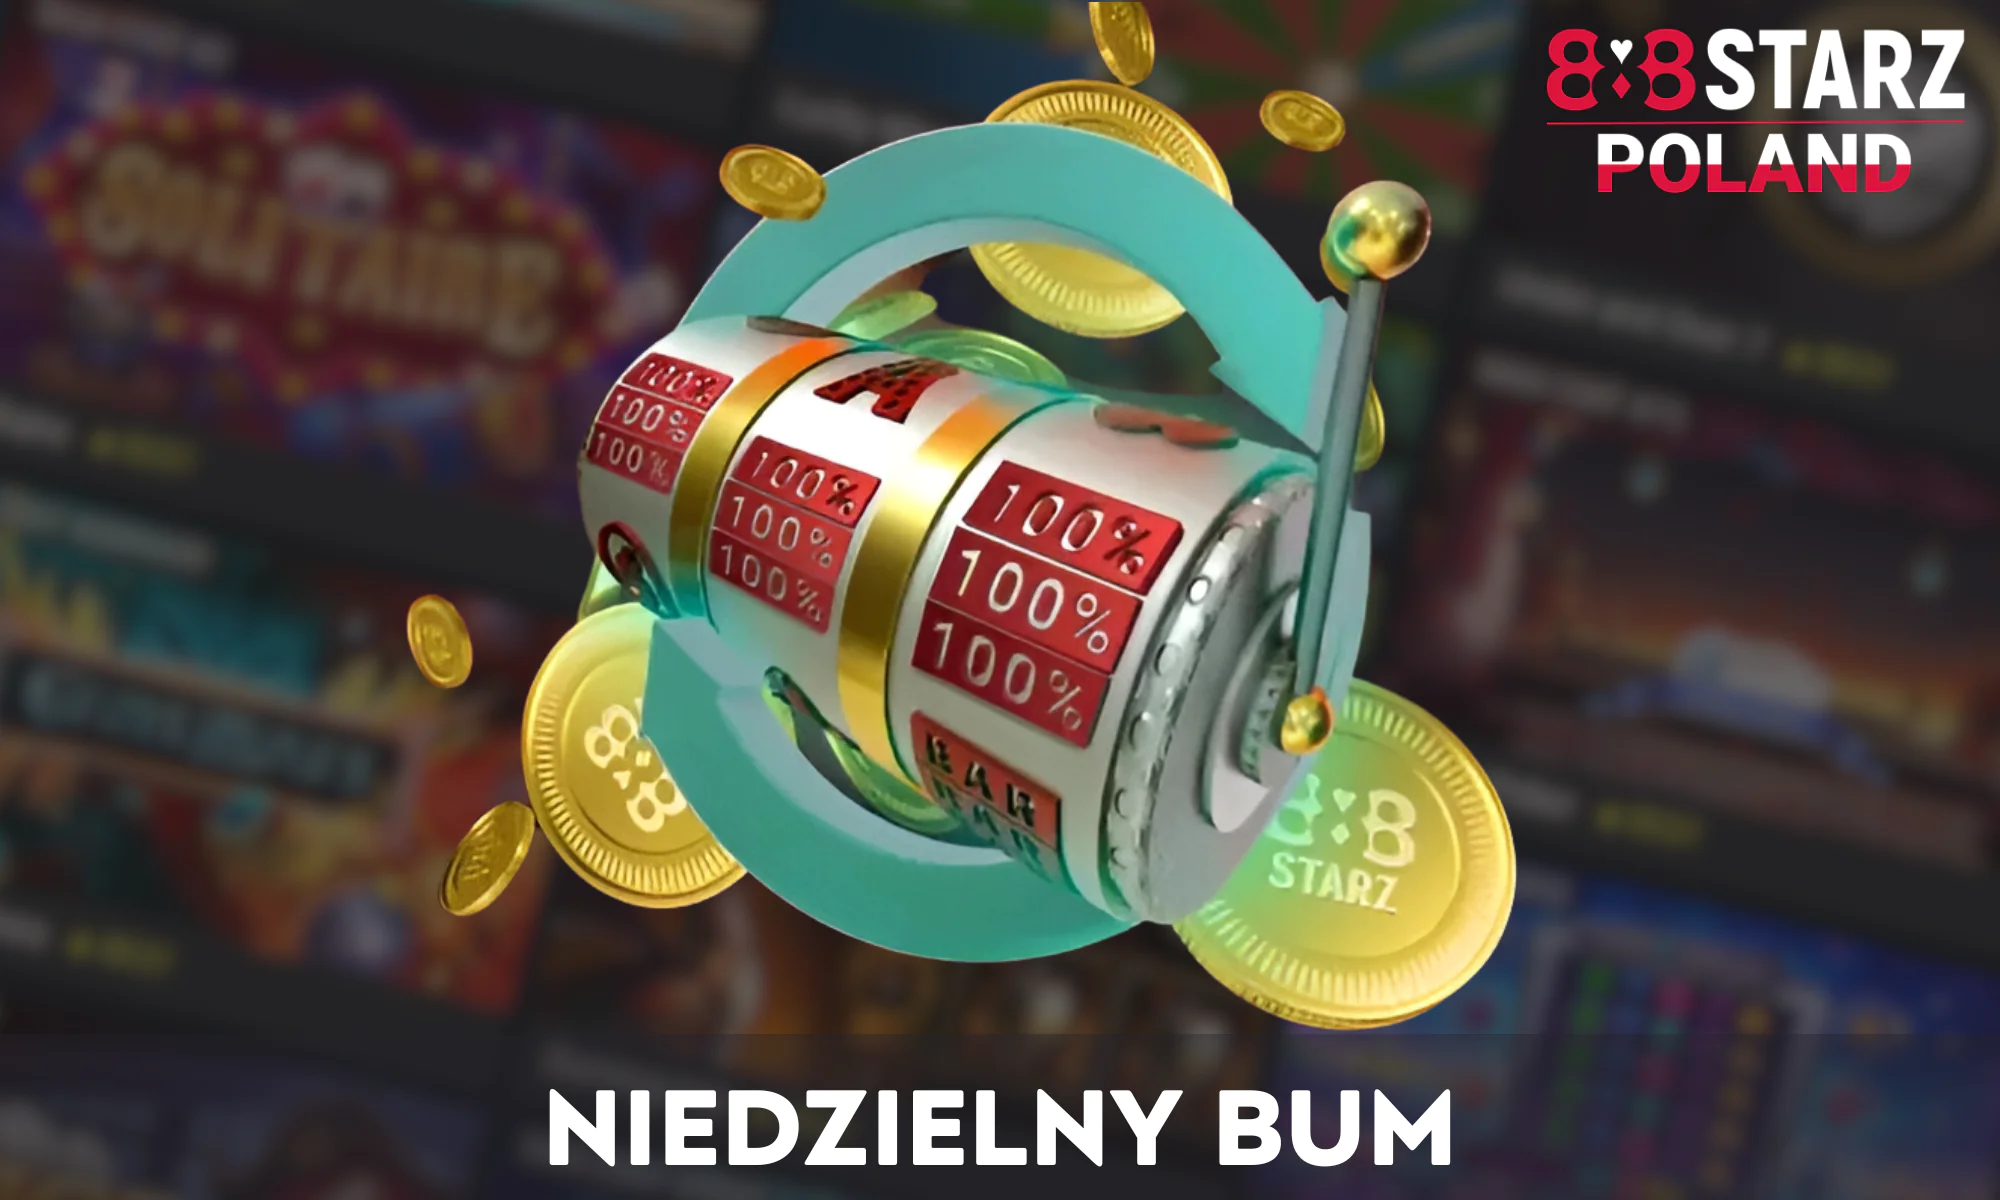 W niedziele minimalny depozyt w wysokości 24 PLN uprawnia do otrzymania bonusu 100% w 888Starz Casino